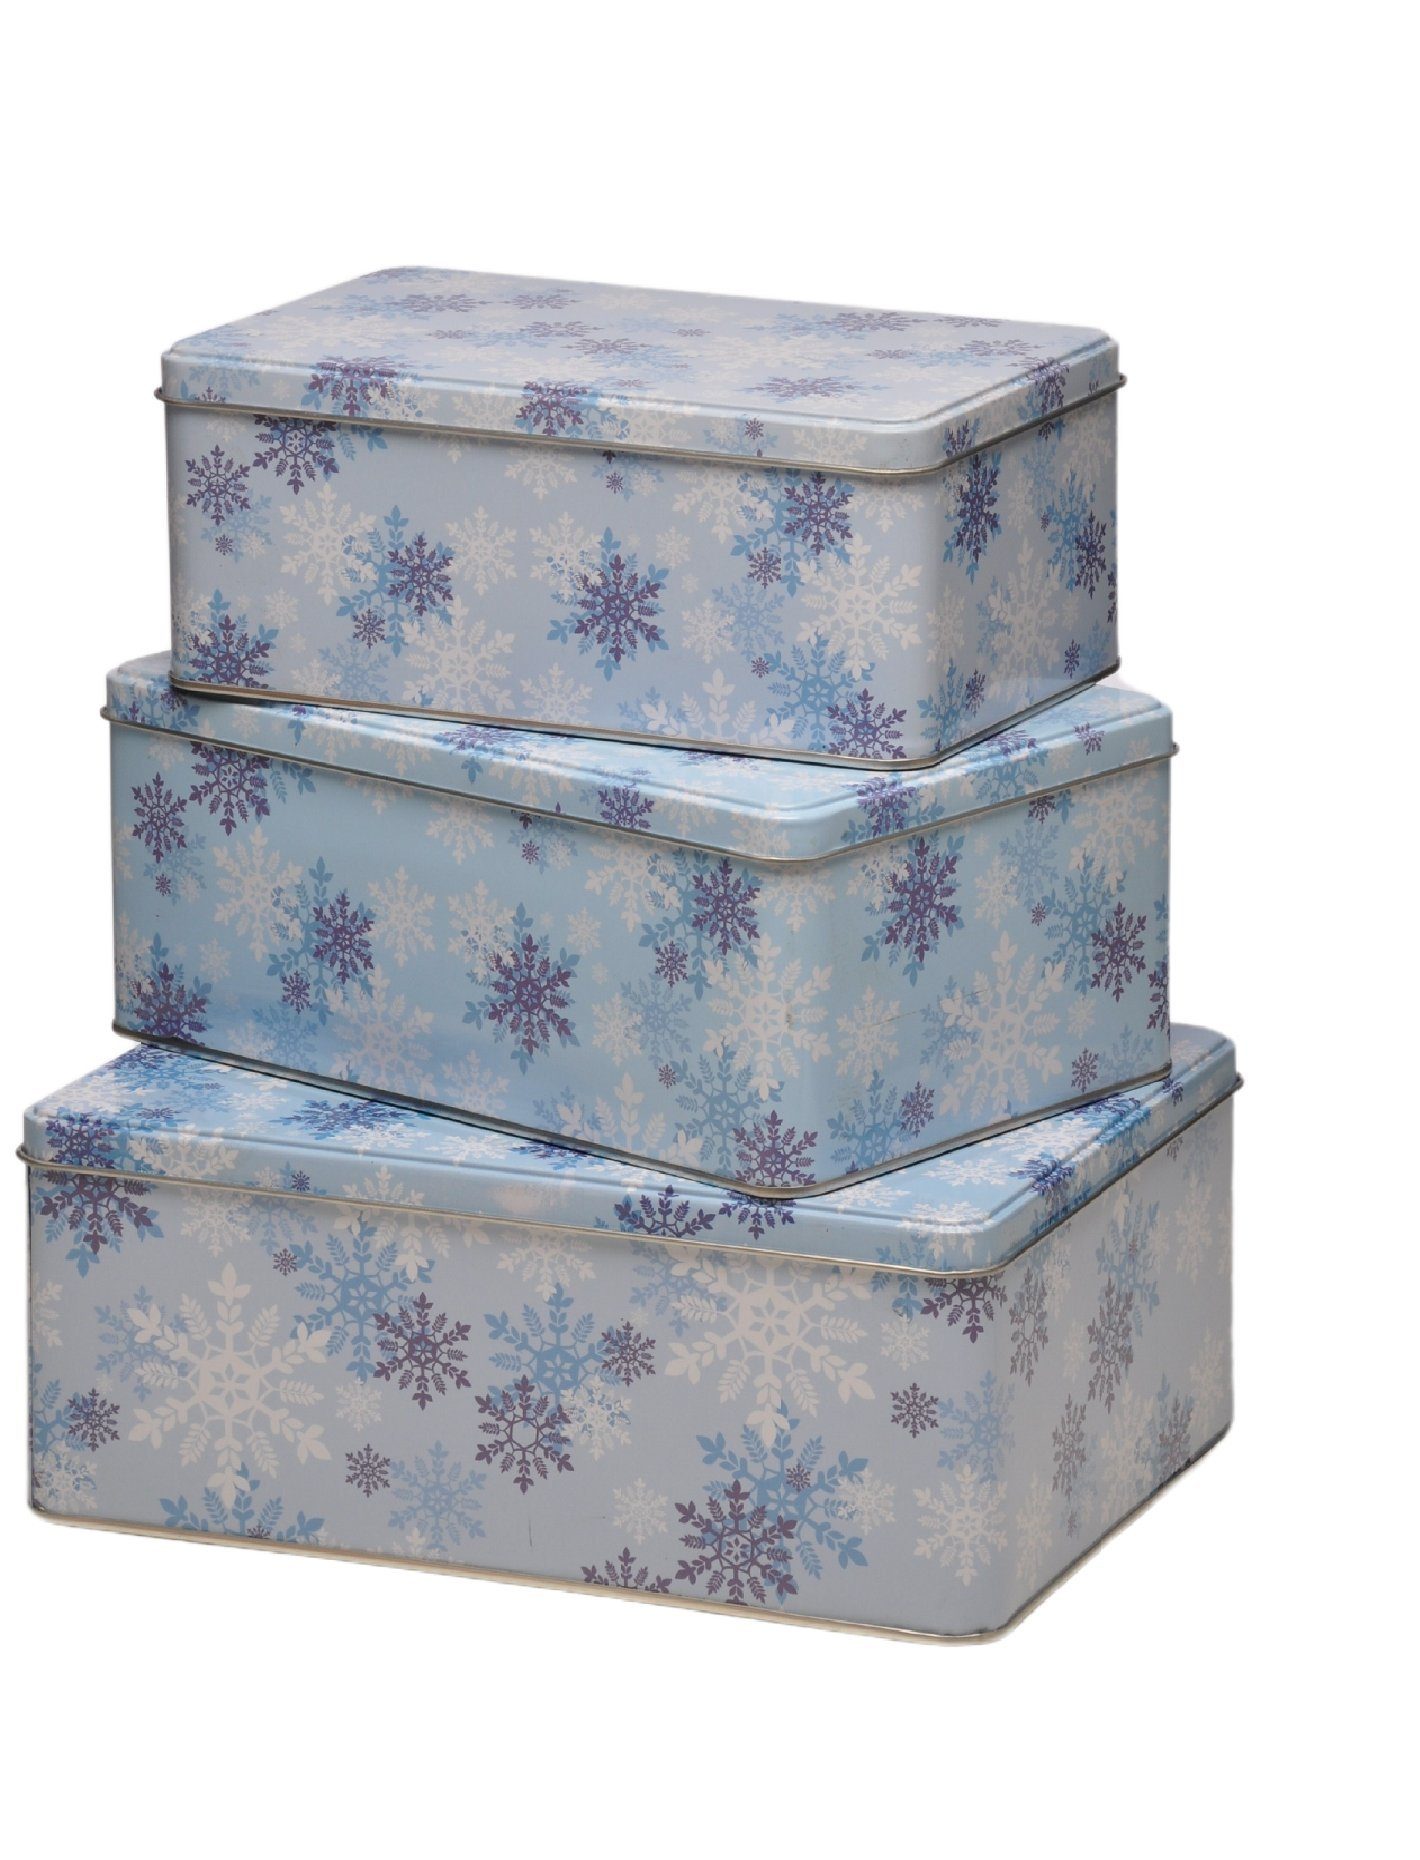 Rungassi Keksdose Weihnachts-Keksdosen Plätzchendosen Dosen 3er Set rechteckig Farbe: Hellblau